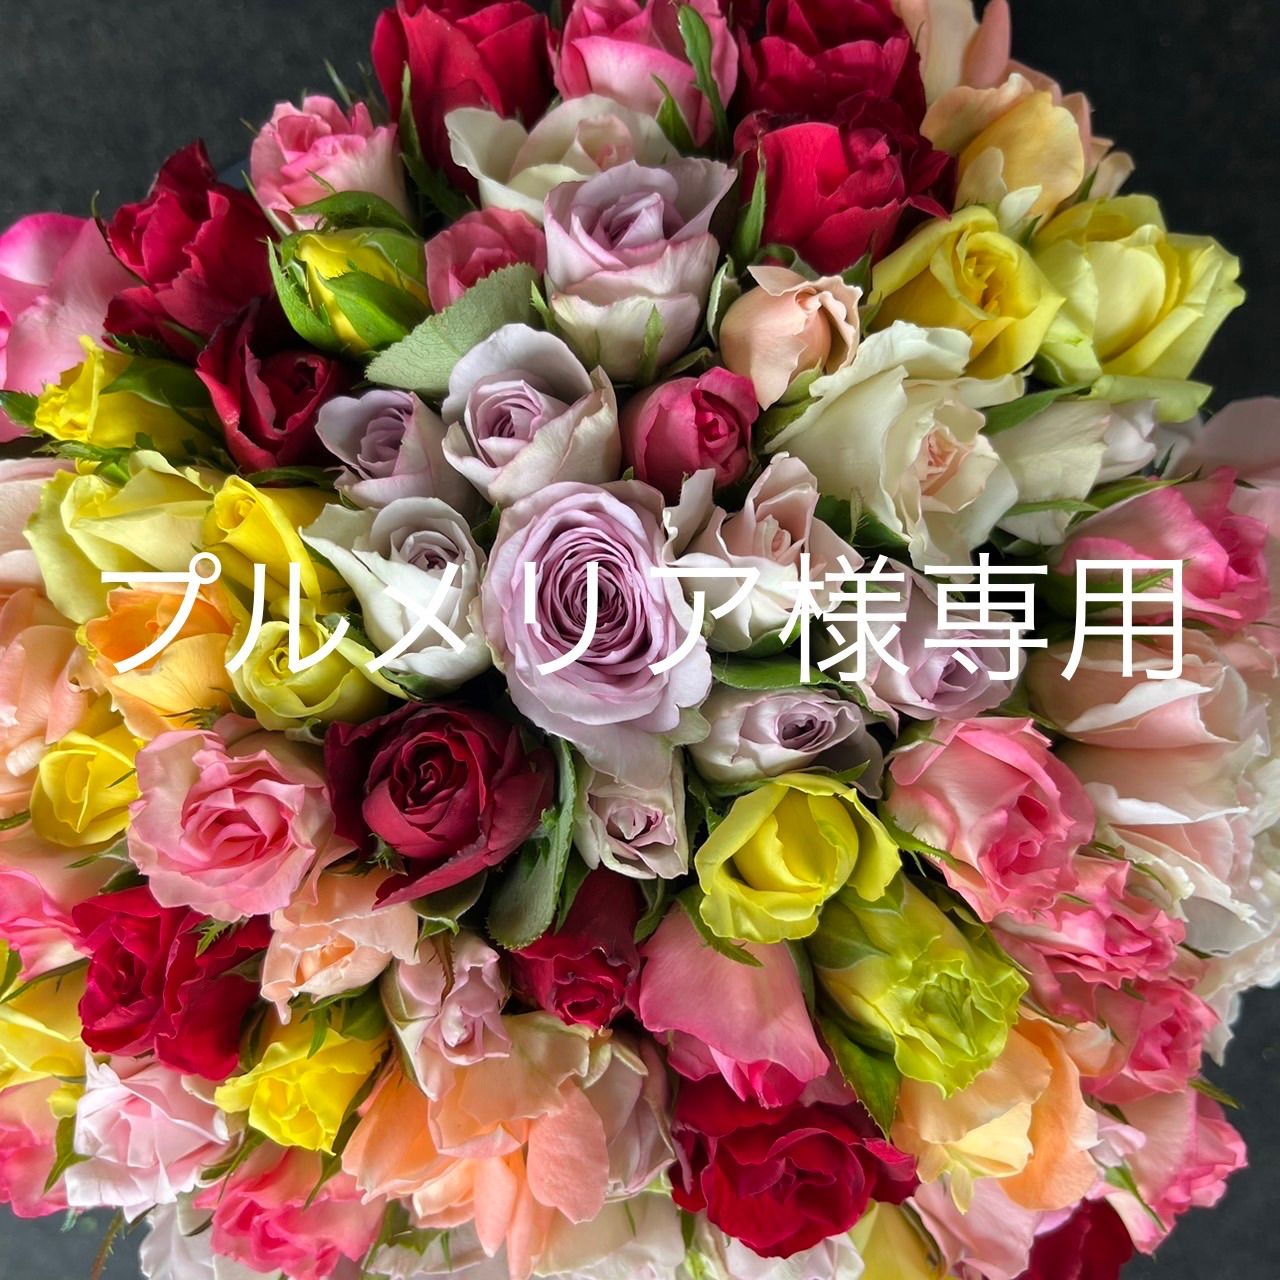 プルメリア様専用 - ROSE NET〜バラの花束ギフト〜 - メルカリ